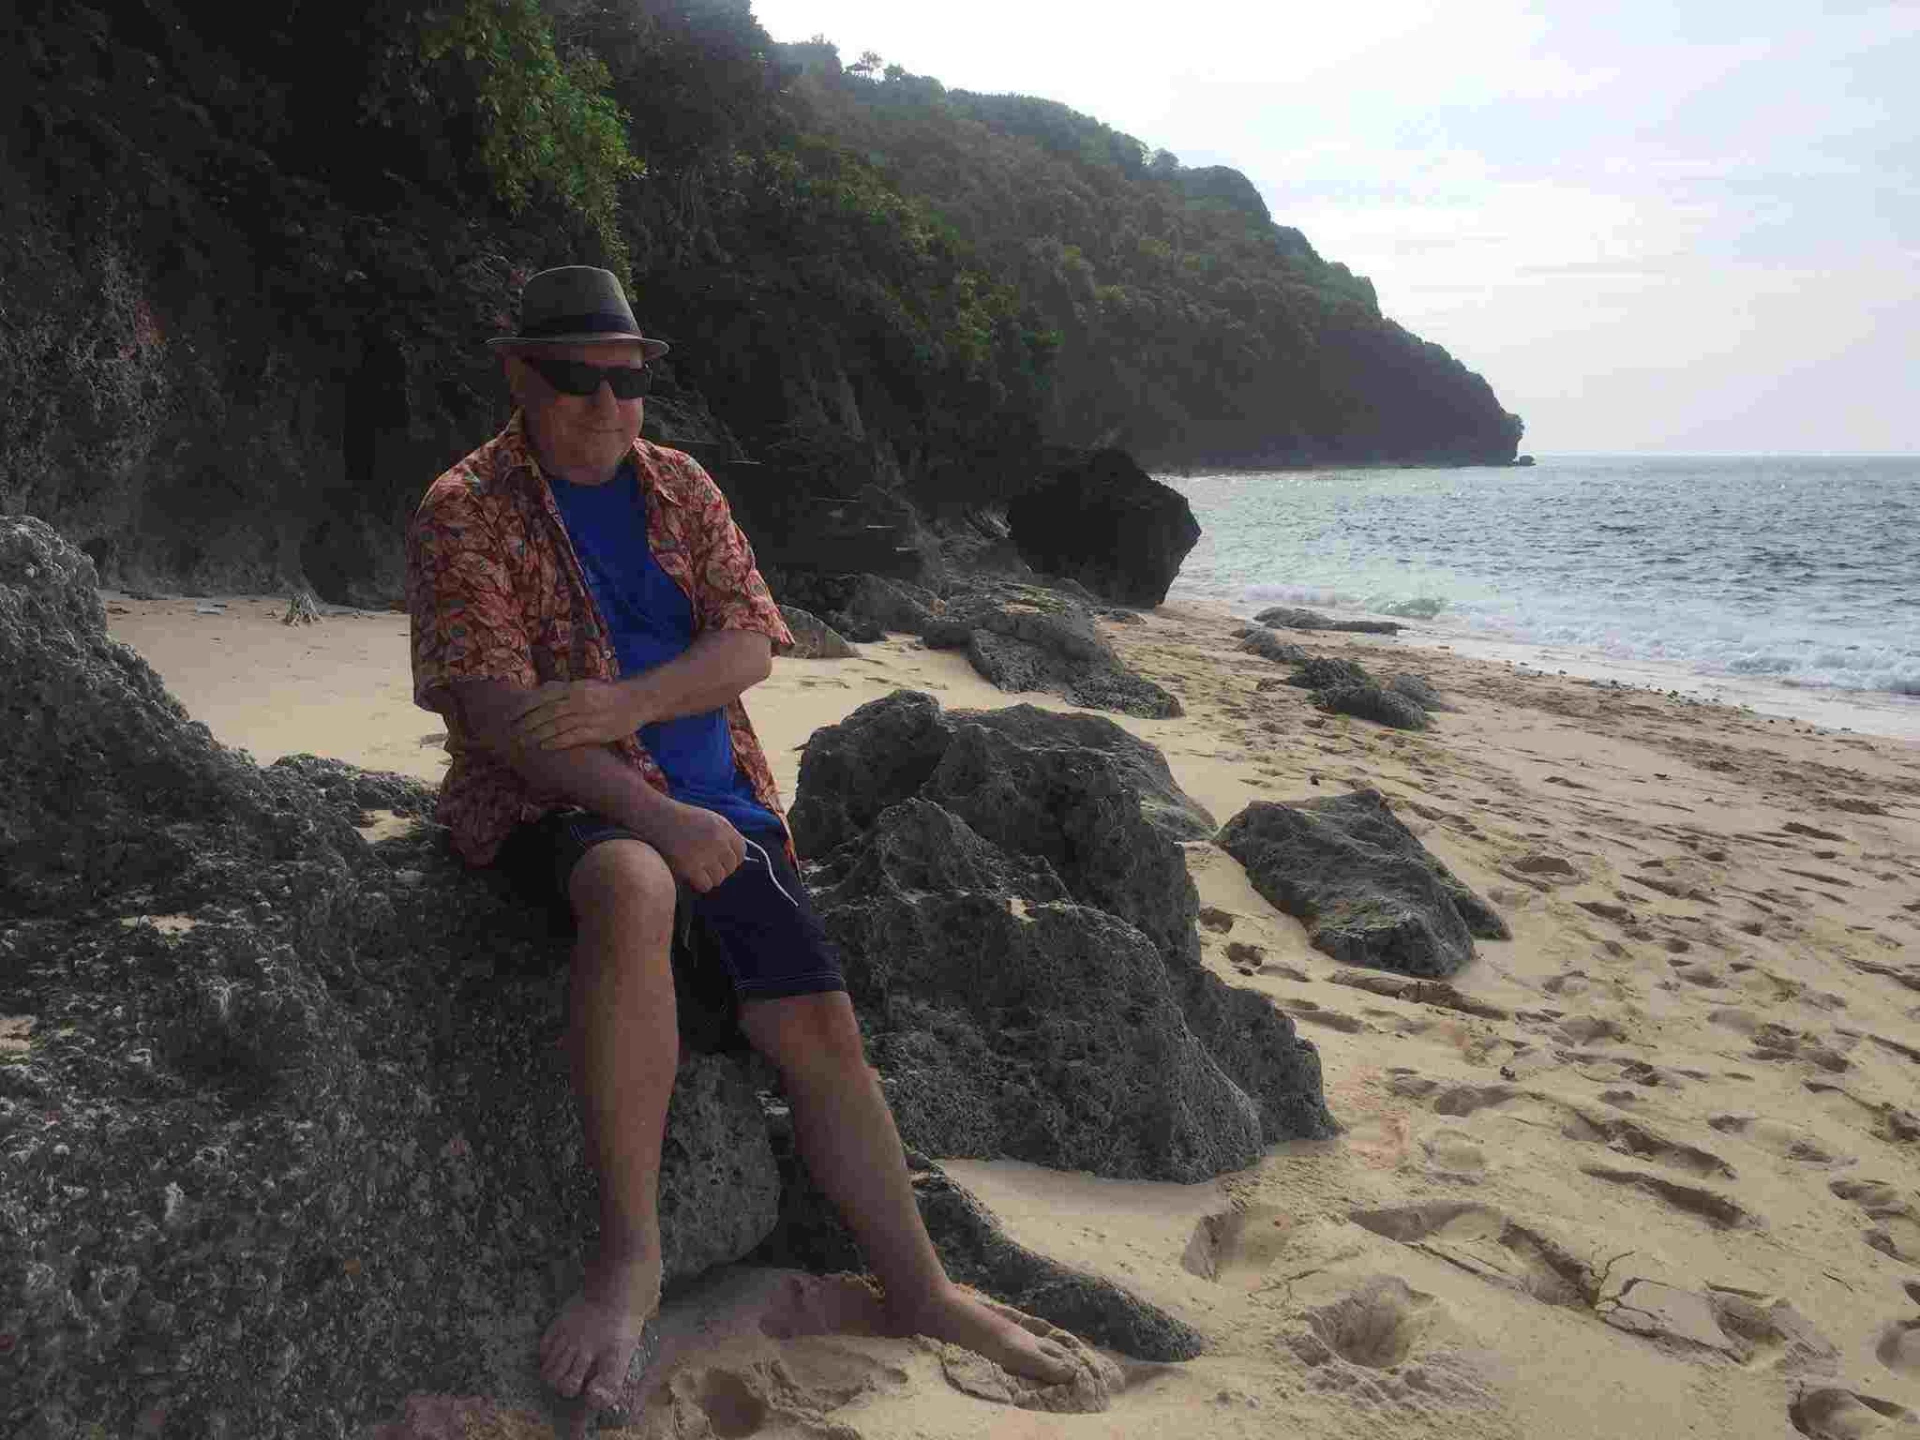 Don in Bali